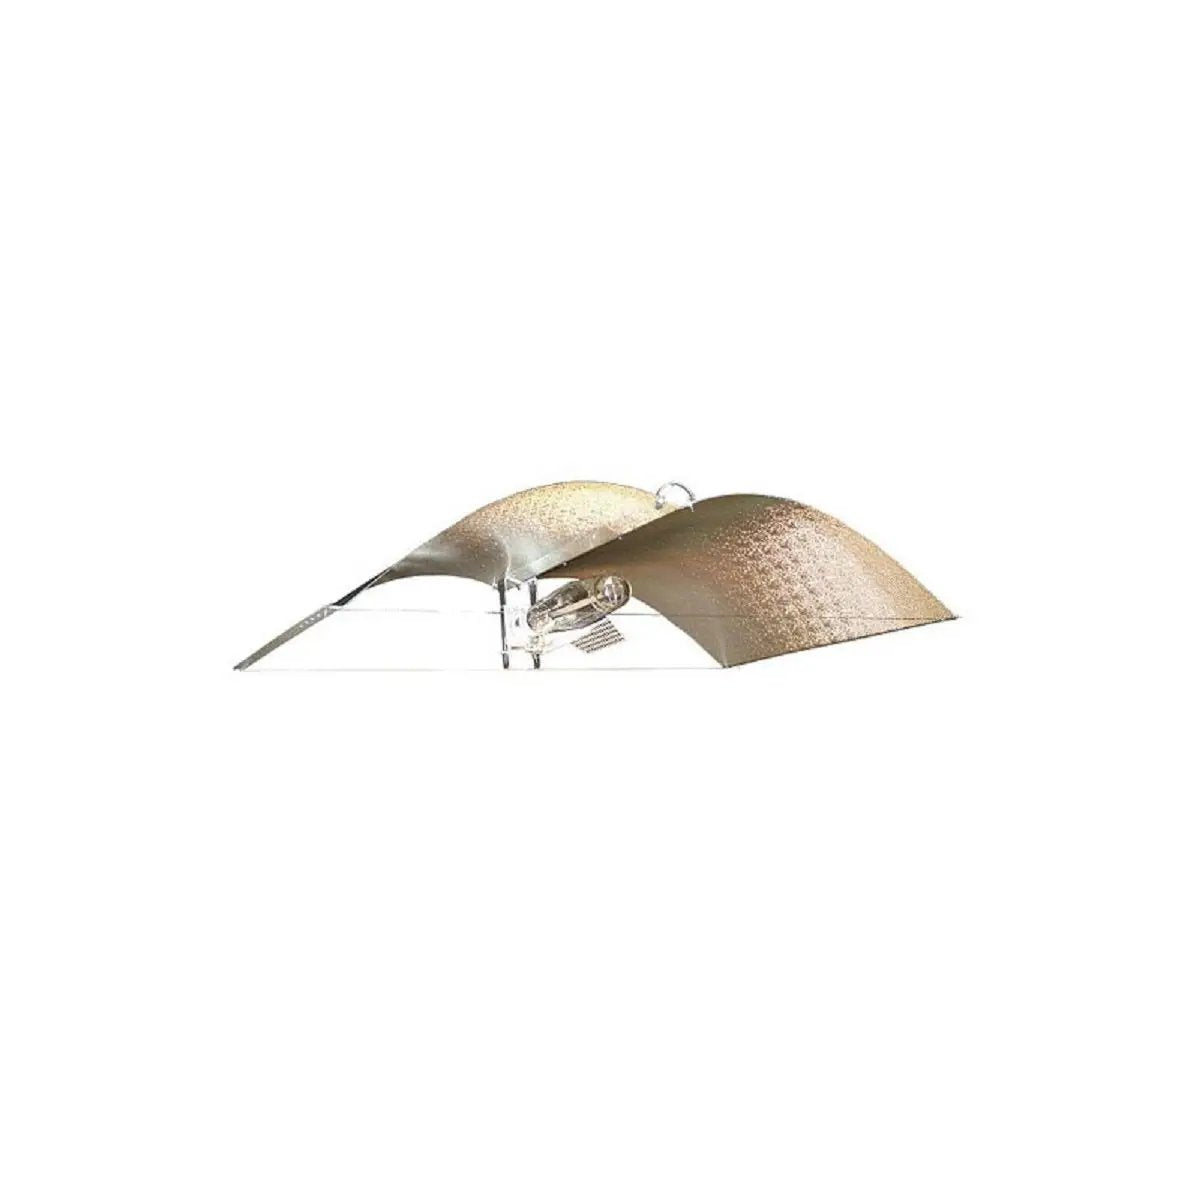 Réflecteur Adjust A Wings Avenger Medium pour lampes de culture HPS et MH